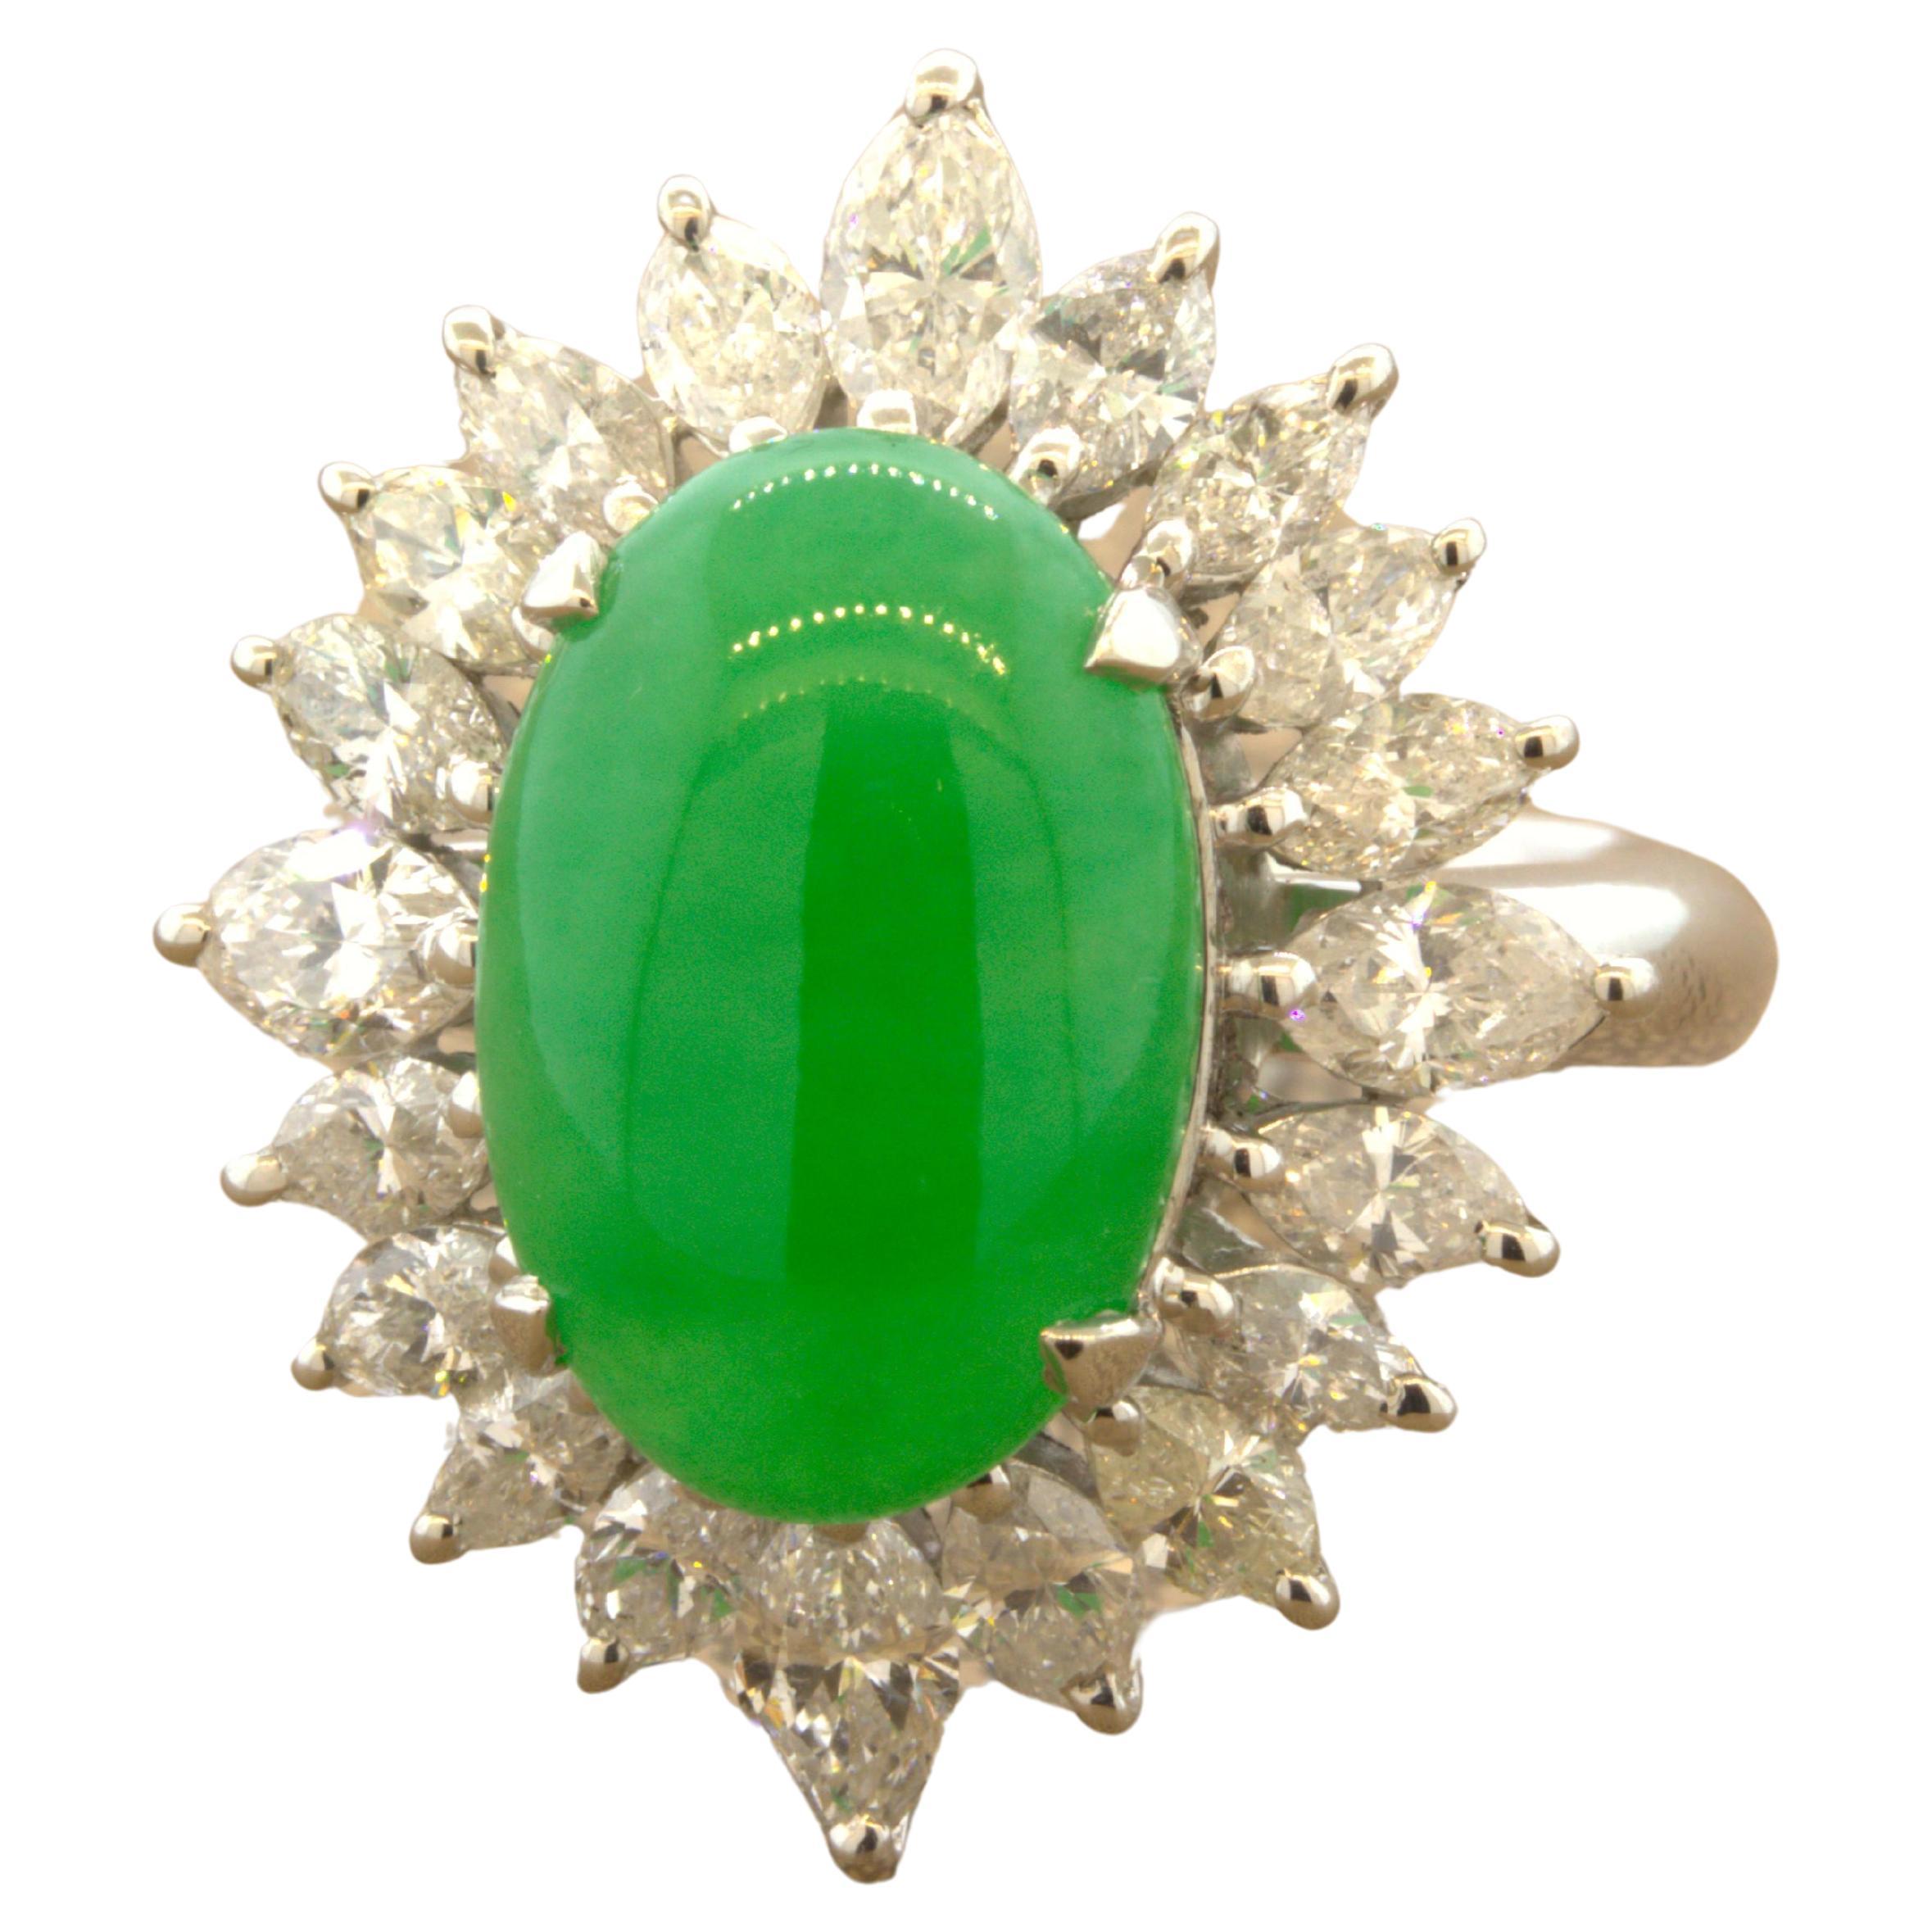 Ein feiner Edelstein aus natürlicher Jadeit-Jade steht im Mittelpunkt. Er wiegt 5,47 Karat und hat eine ideale leuchtend grüne Farbe sowie eine gleichmäßige Farbe und einen starken Glanz, wenn das Licht über den Stein rollt. Er ist von 2,14 Karat